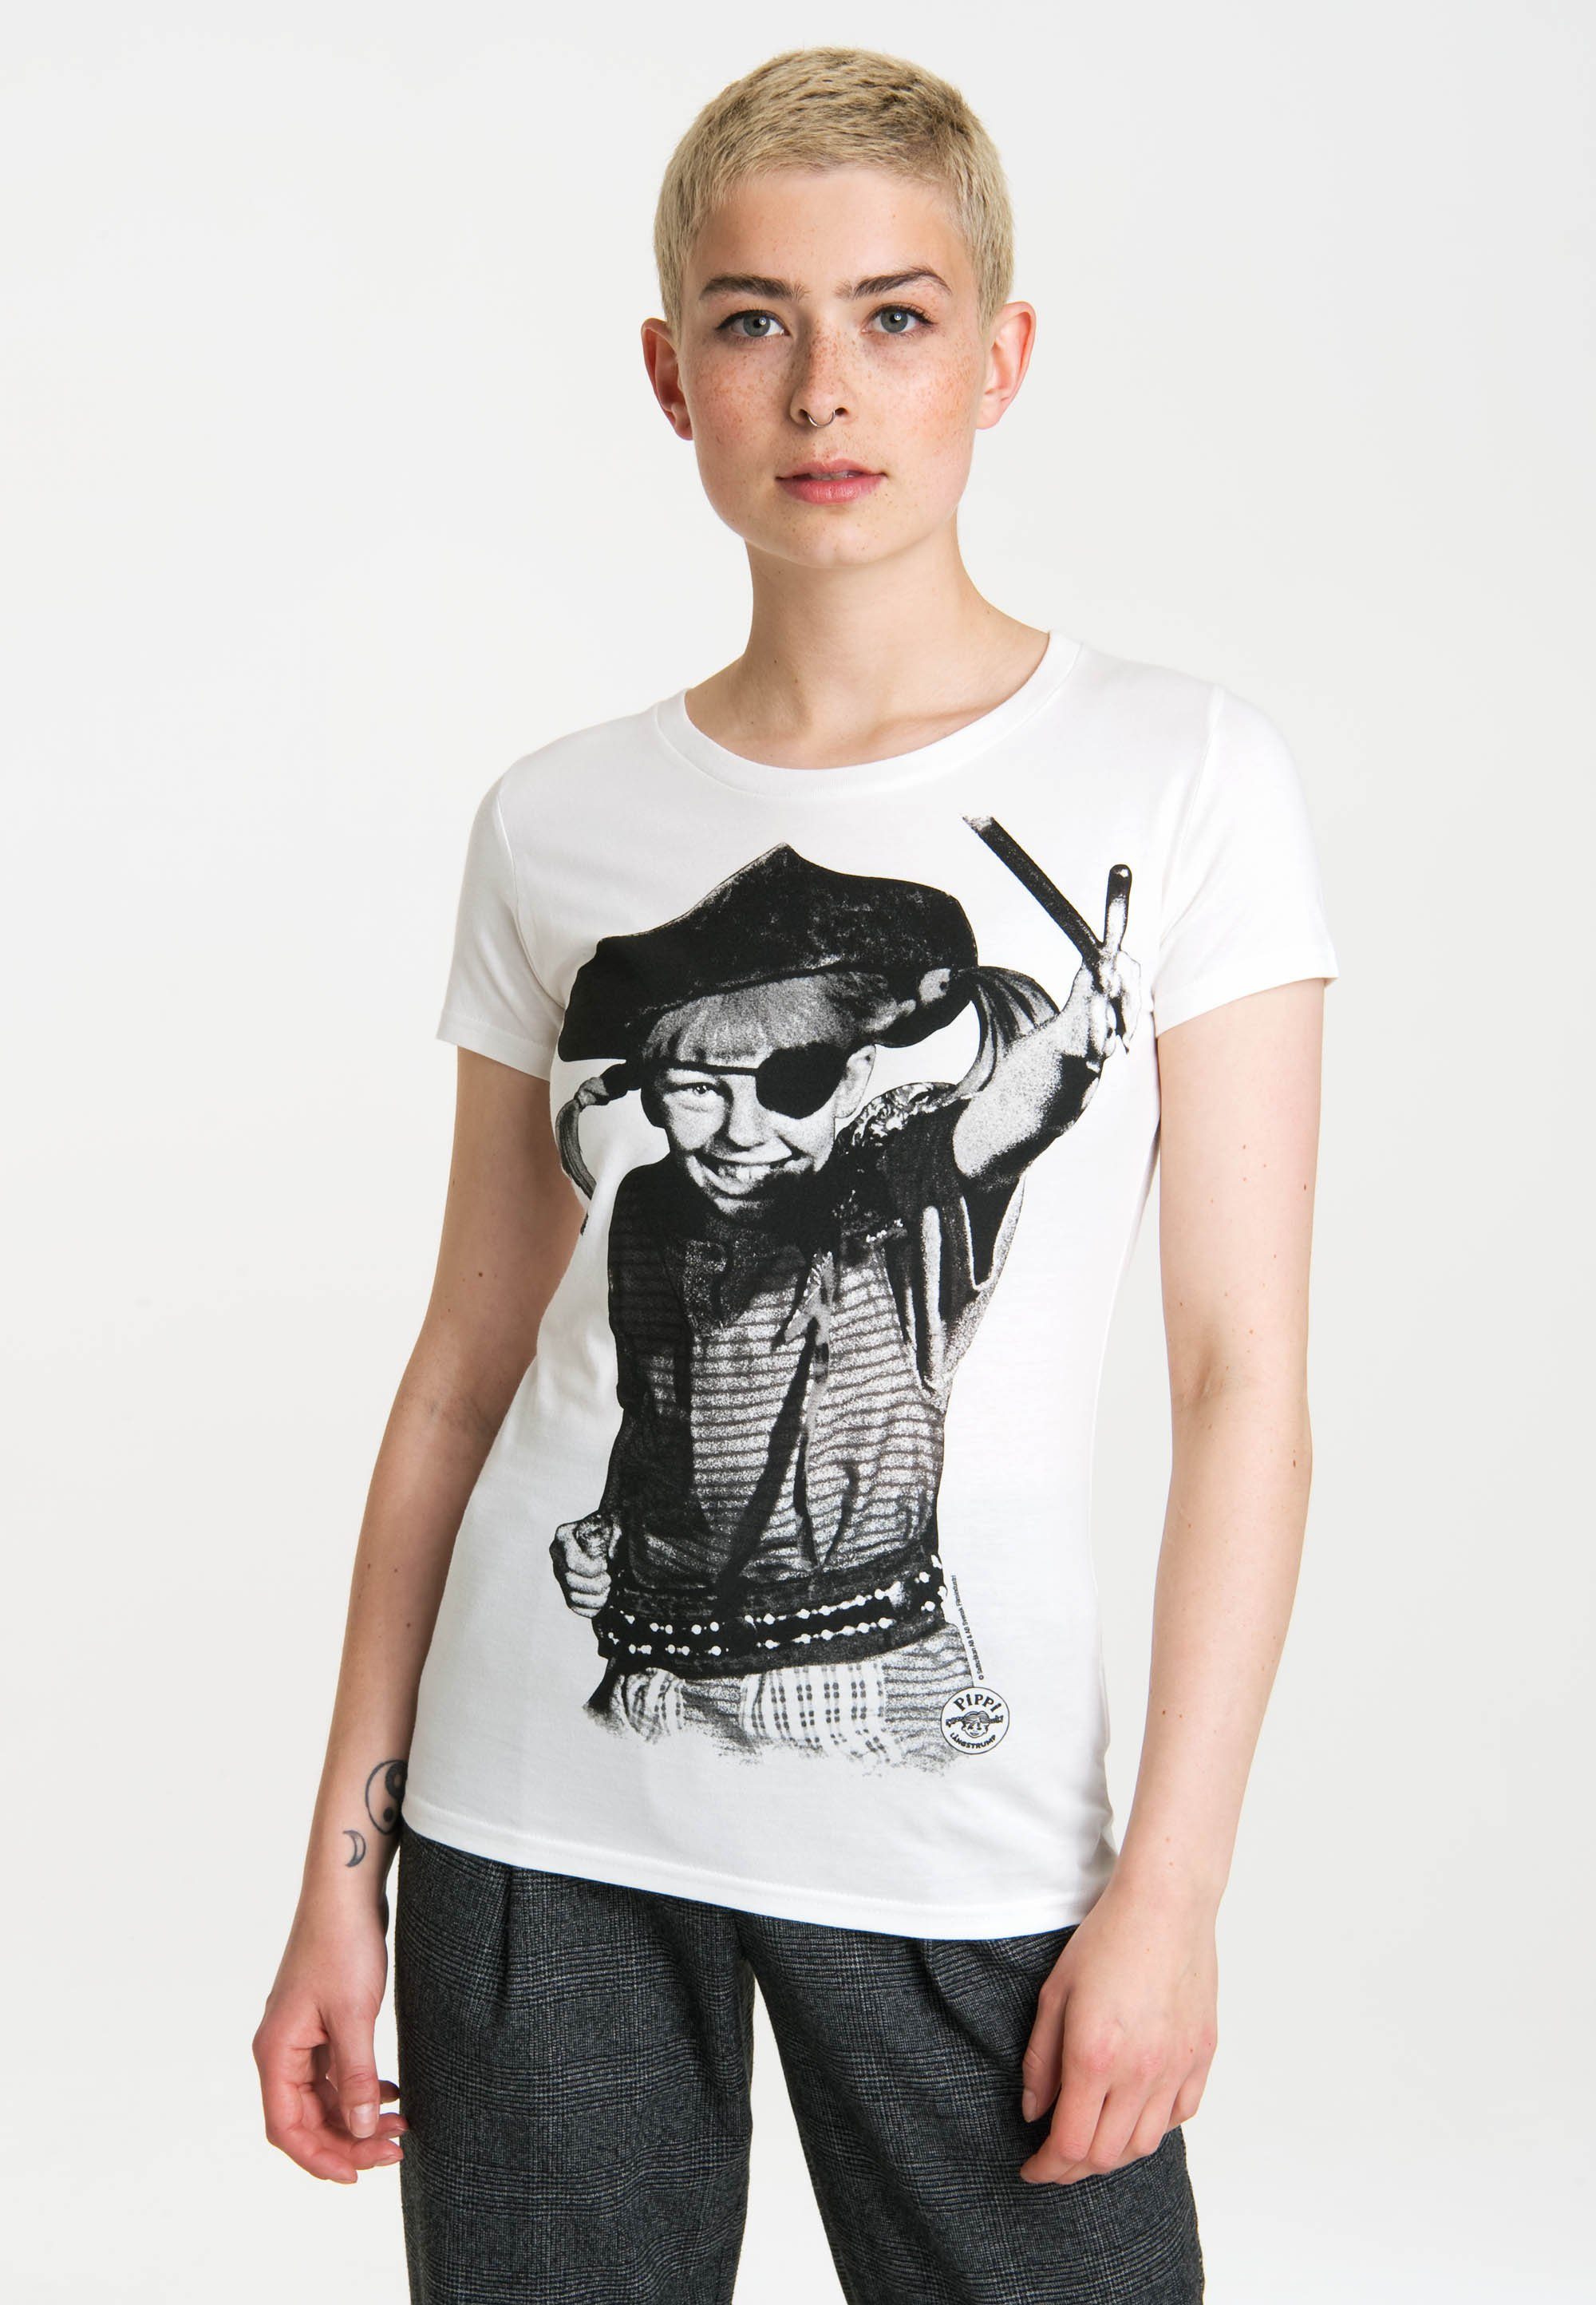 LOGOSHIRT T-Shirt »Pippi - Pirat - Pirate - Pippi Langstrumpf« mit  niedlichem Frontprint online kaufen | OTTO